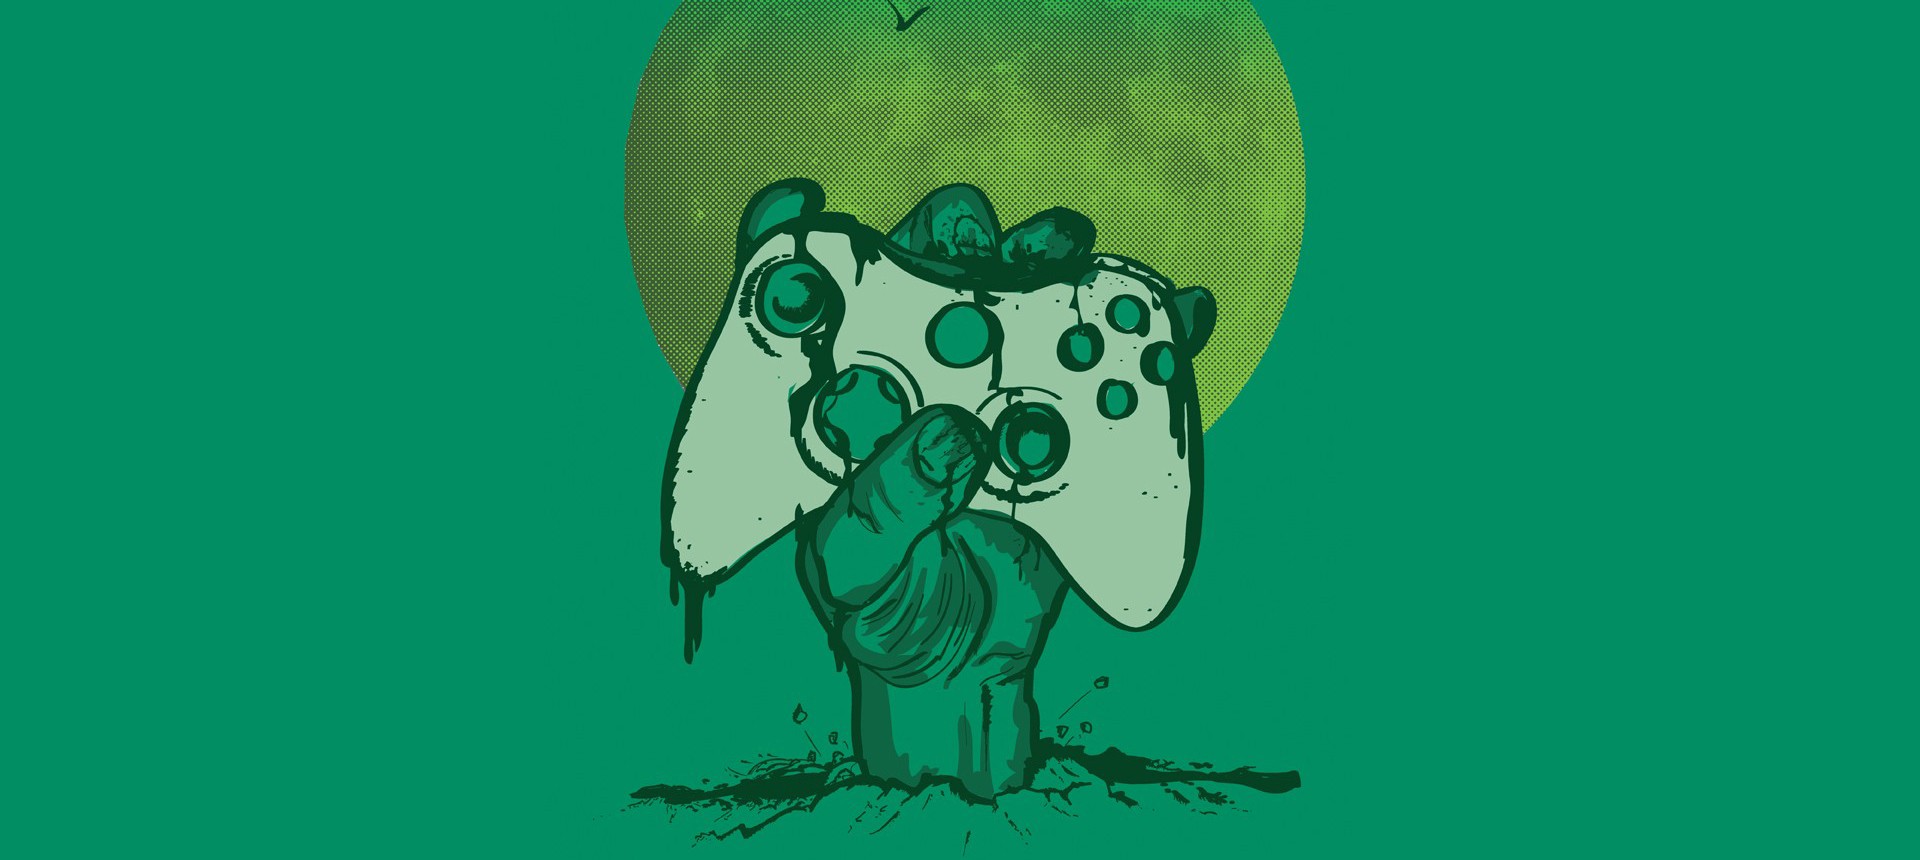 Mirror's Edge é um dos jogos gratuitos da Xbox Live em setembro